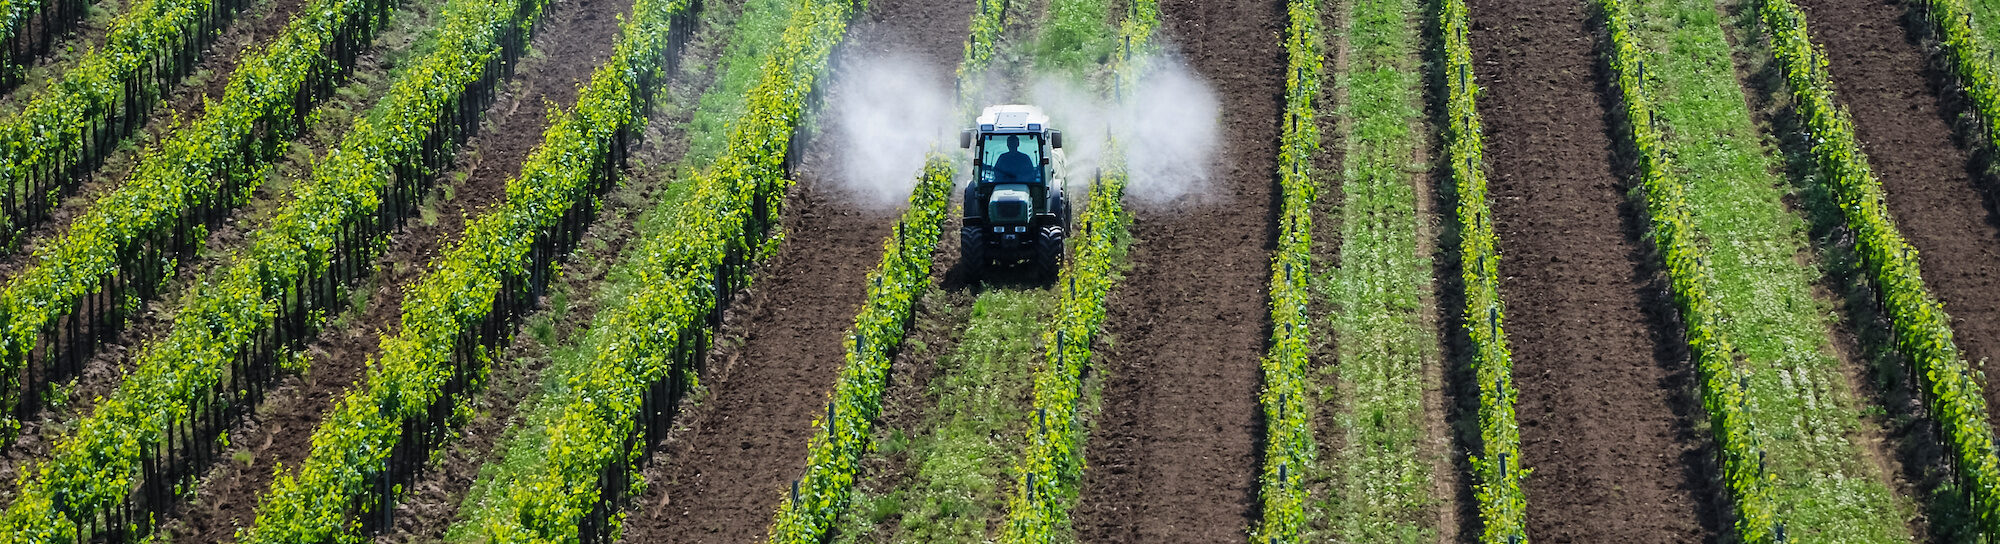 Five myths about pesticides